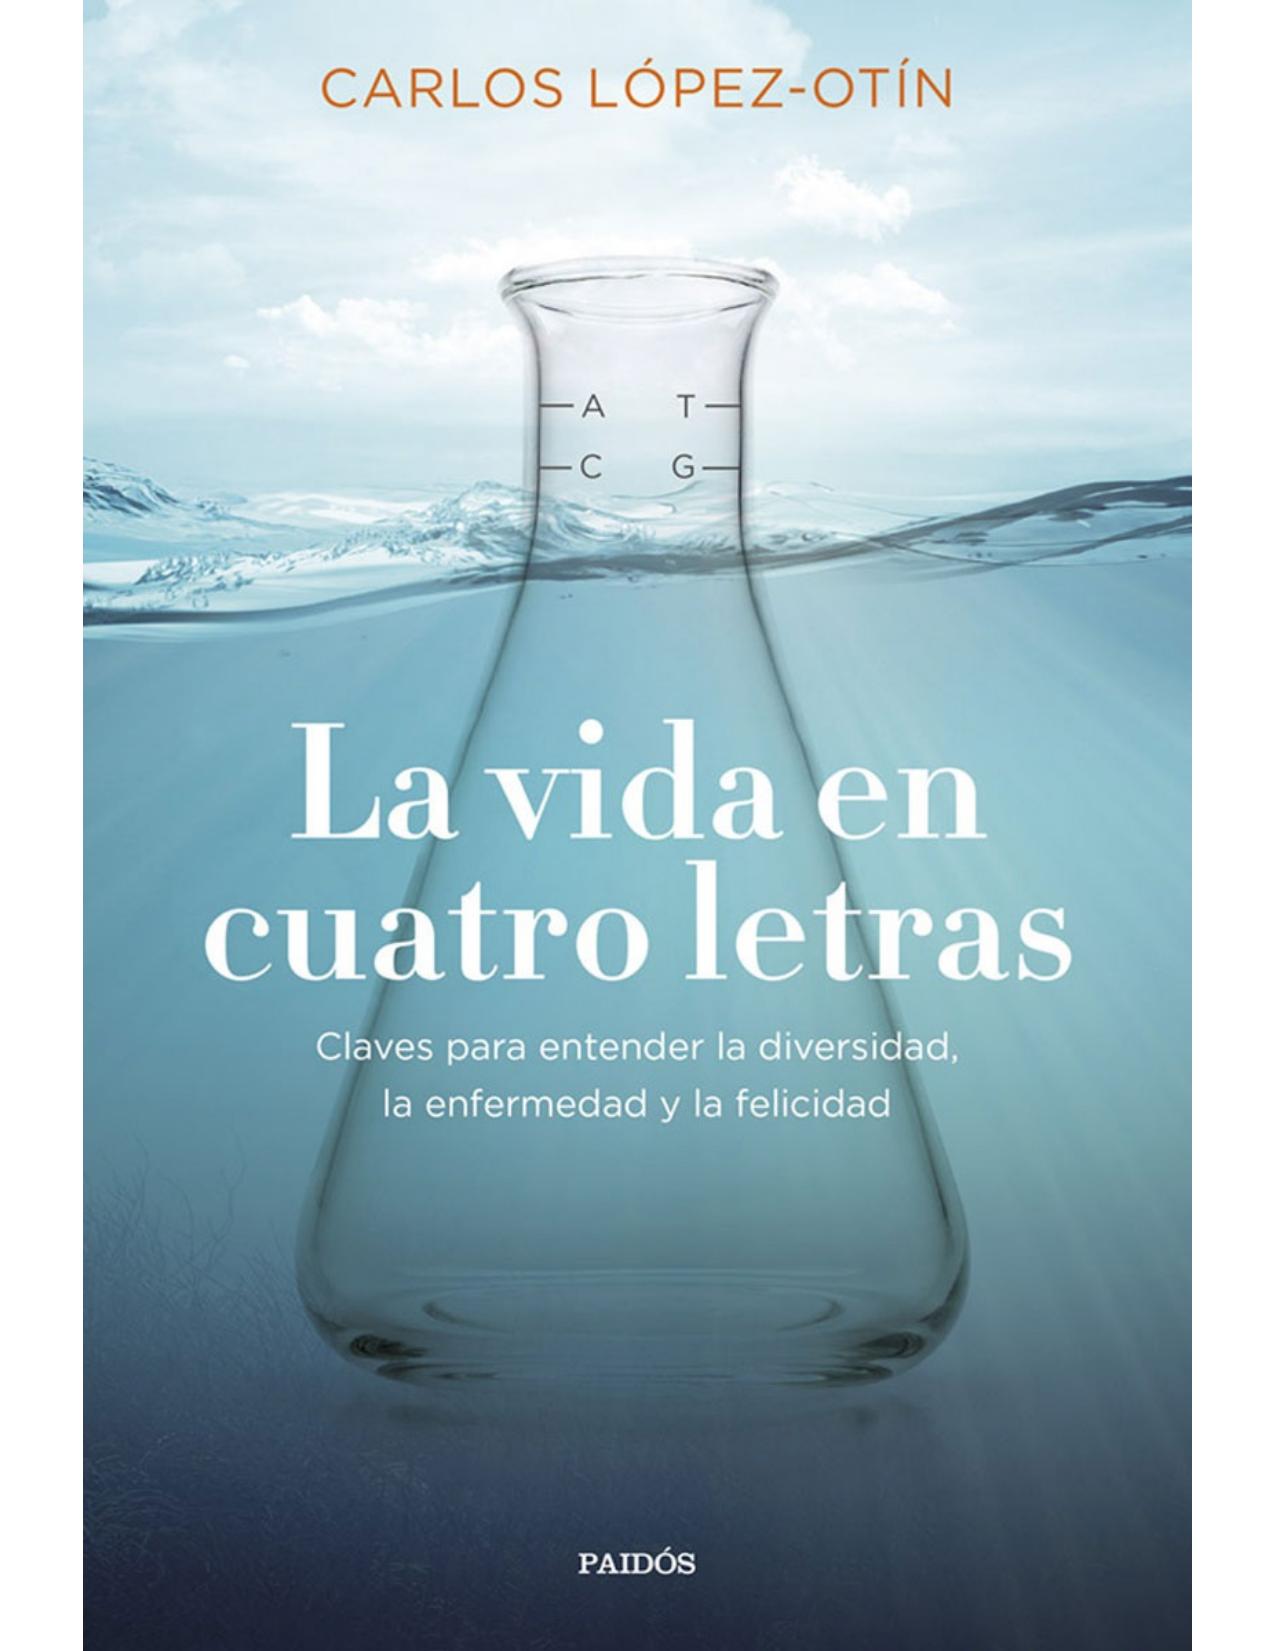 La vida en cuatro letras (Spanish Edition)